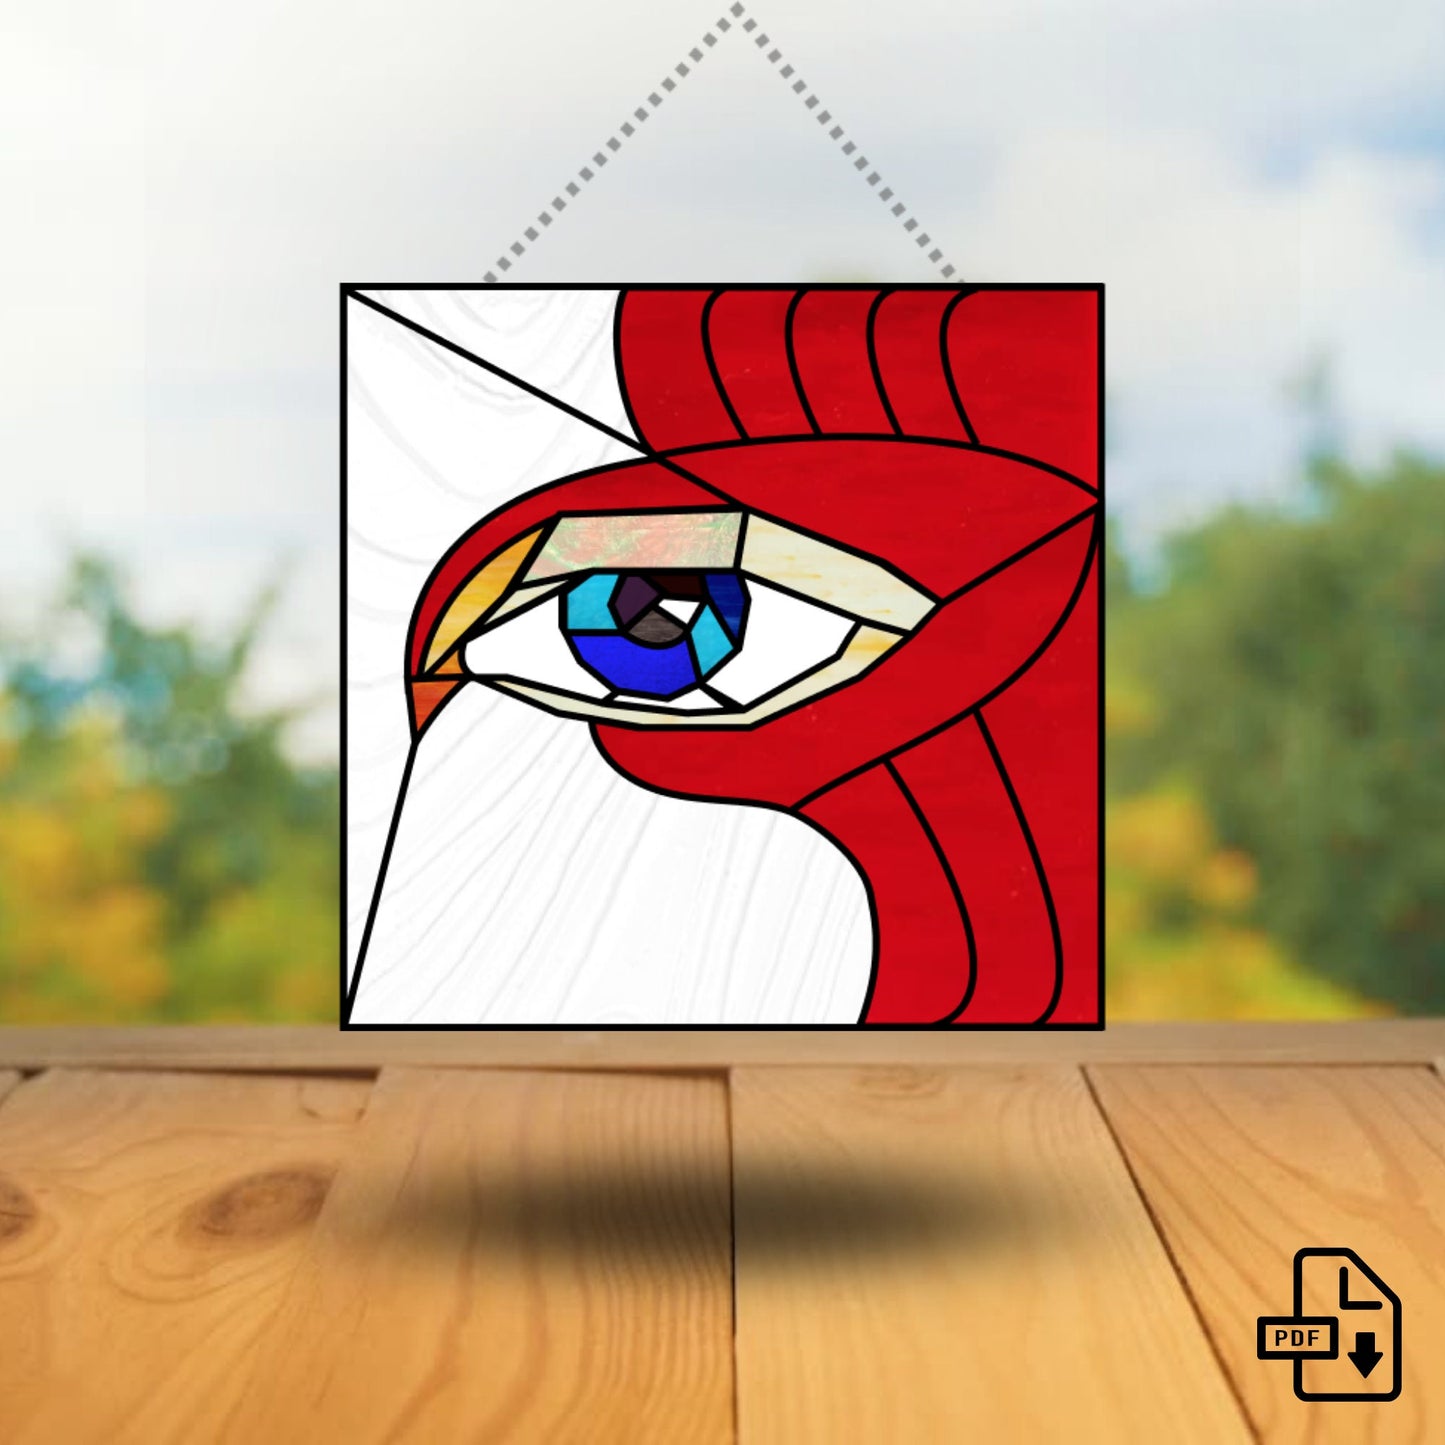 Patrón de vidrieras ojo de pájaro • Patrón de vidrieras boho moderno